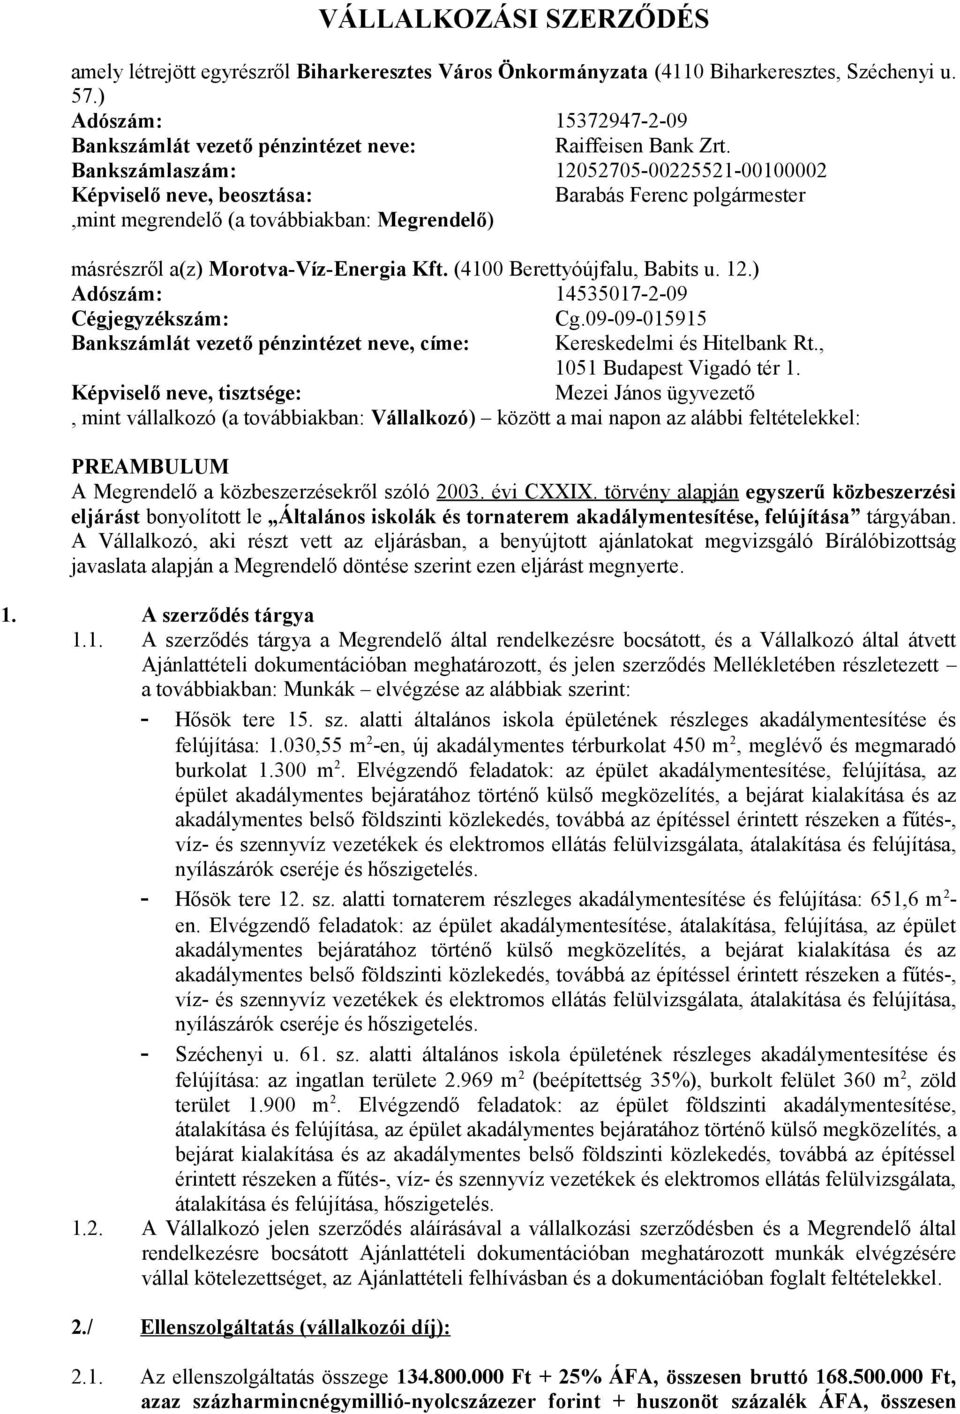 Bankszámlaszám: 12052705-00225521-00100002 Képviselő neve, beosztása: Barabás Ferenc polgármester,mint megrendelő (a továbbiakban: Megrendelő) másrészről a(z) Morotva-Víz-Energia Kft.